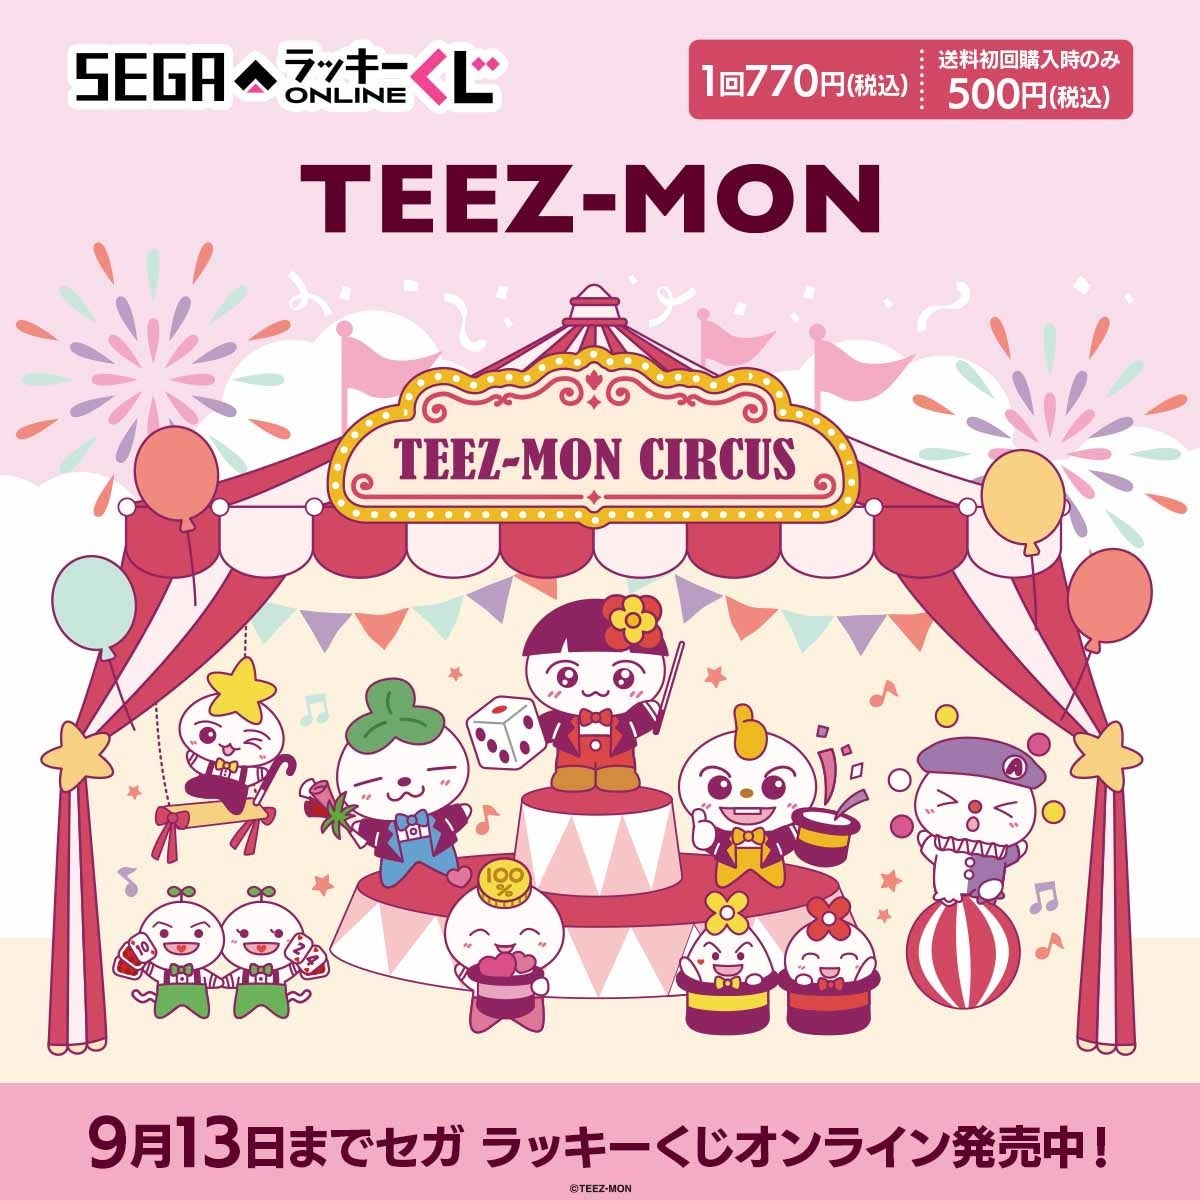 セガ ラッキーくじオンラインから「TEEZ-MON」のオンラインくじが販売開始！